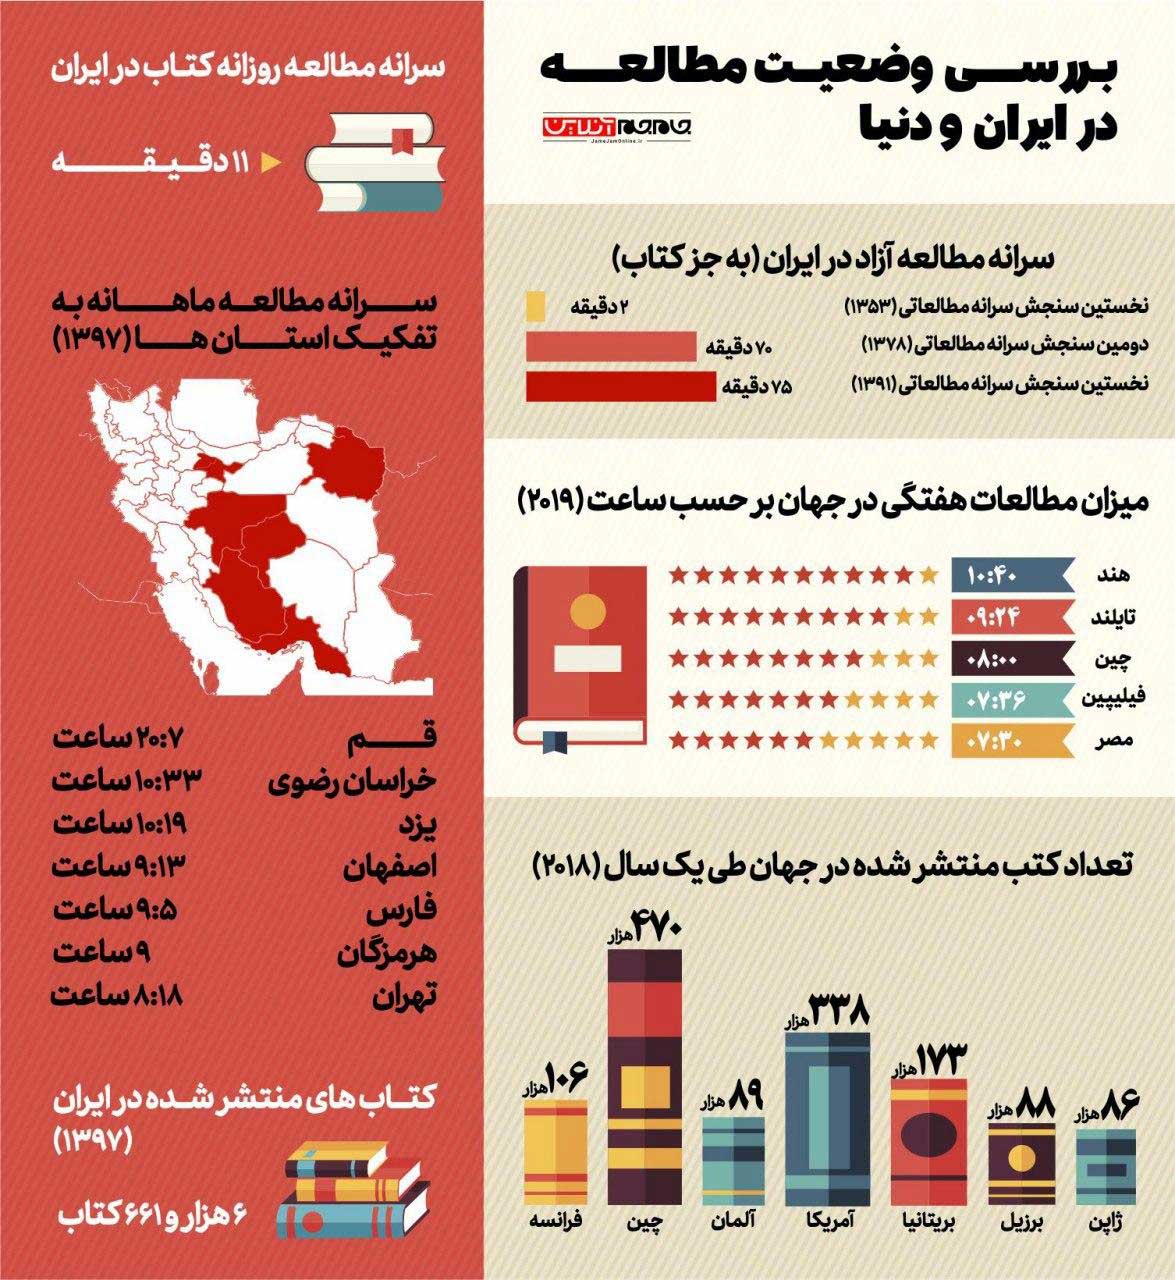  			 				 					بررسی وضعیت مطالعه در ایران و جهان 				 			 		